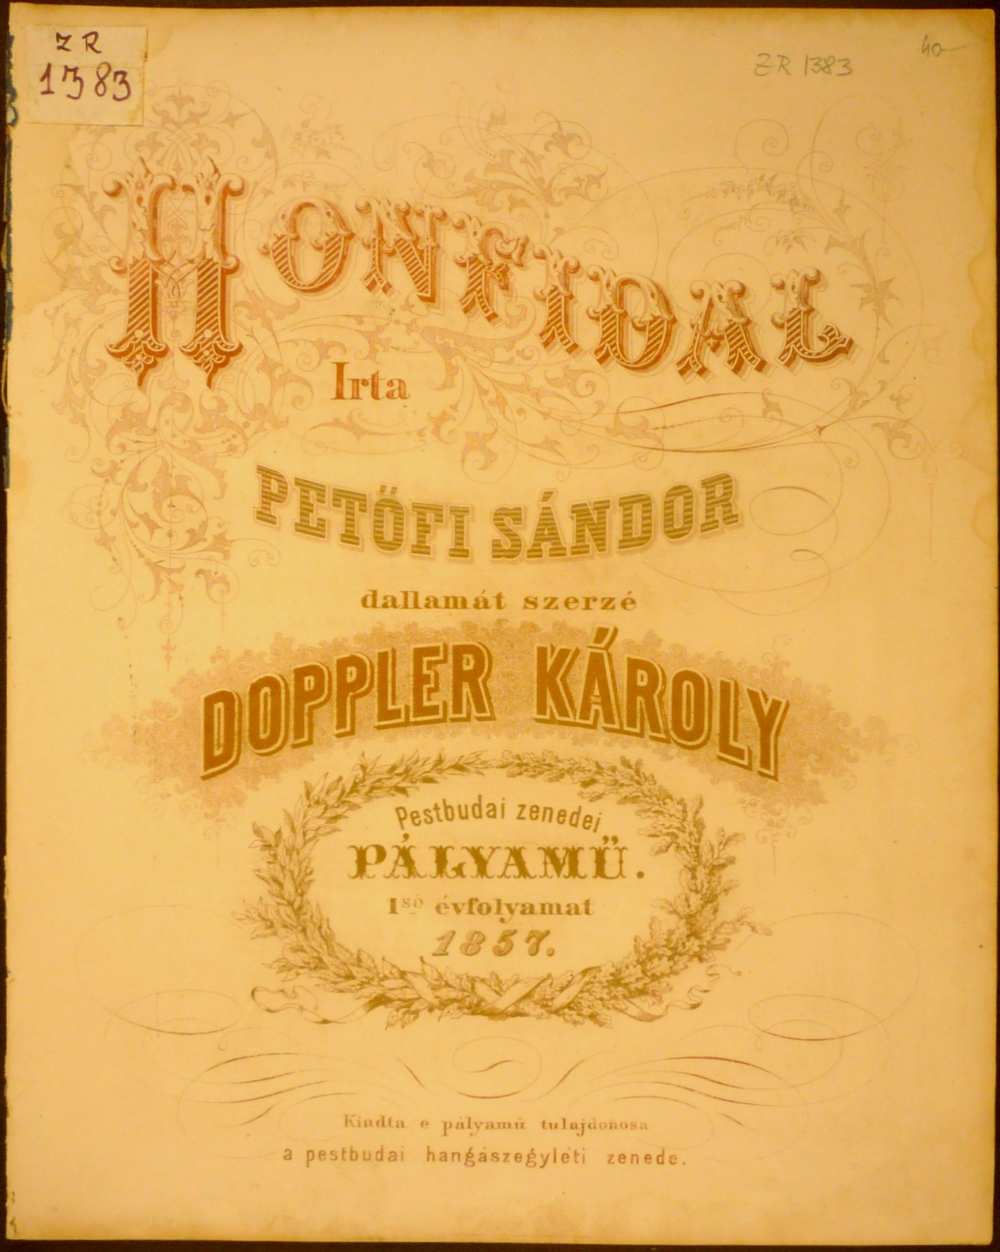 Doppler Károly: Honfidal. A kotta címoldala. Budapest, Pestbudai Hangászegyleti Zenede, 1857. – Színháztörténeti és Zeneműtár, ZR 1383